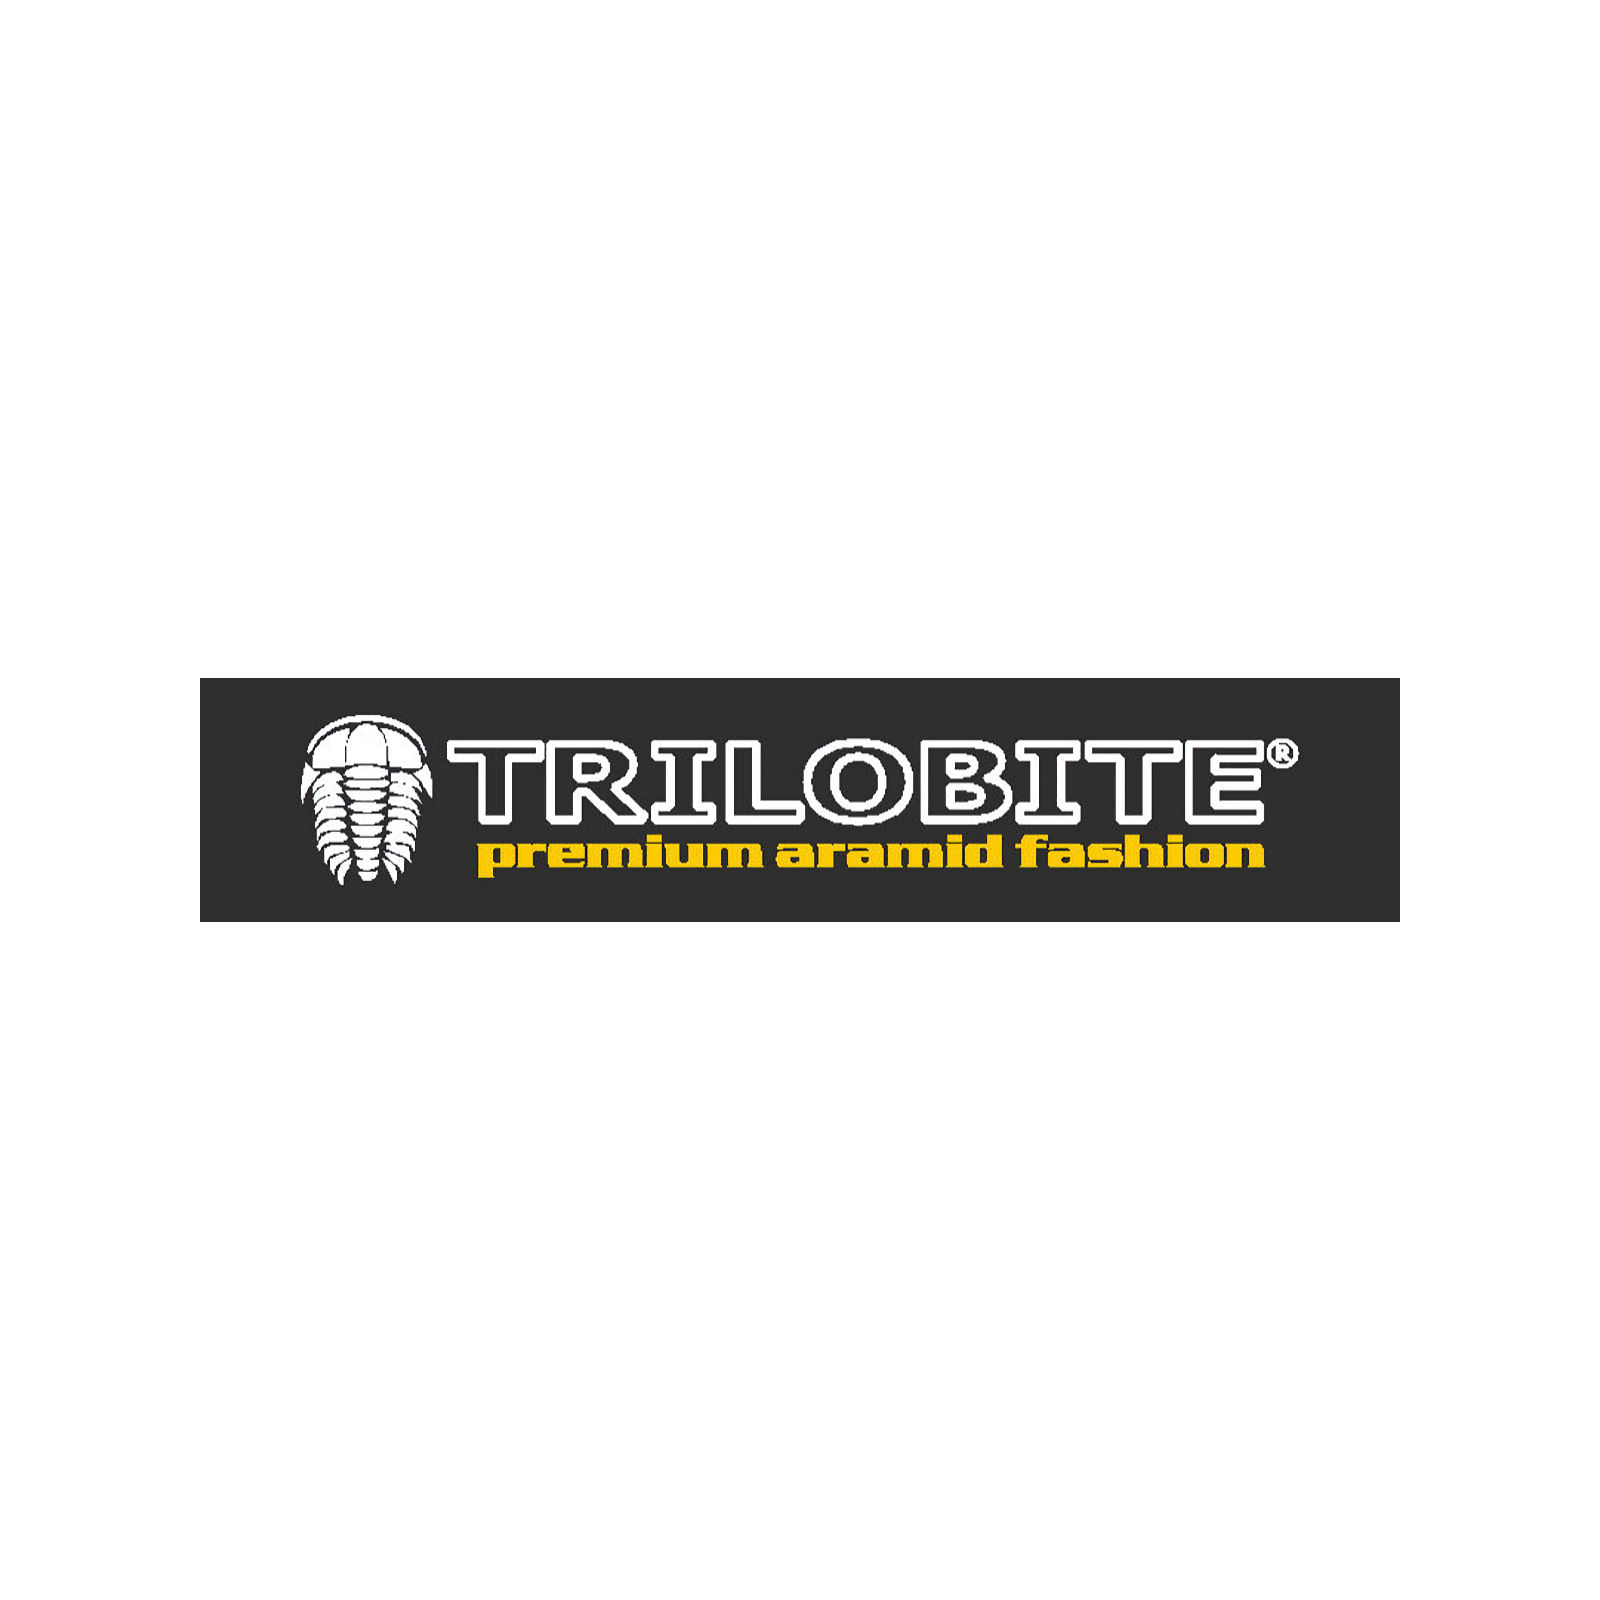 GERMOT Zweirad-Zubehör Vertriebs GmbH - Trilobite Aufkleber groß